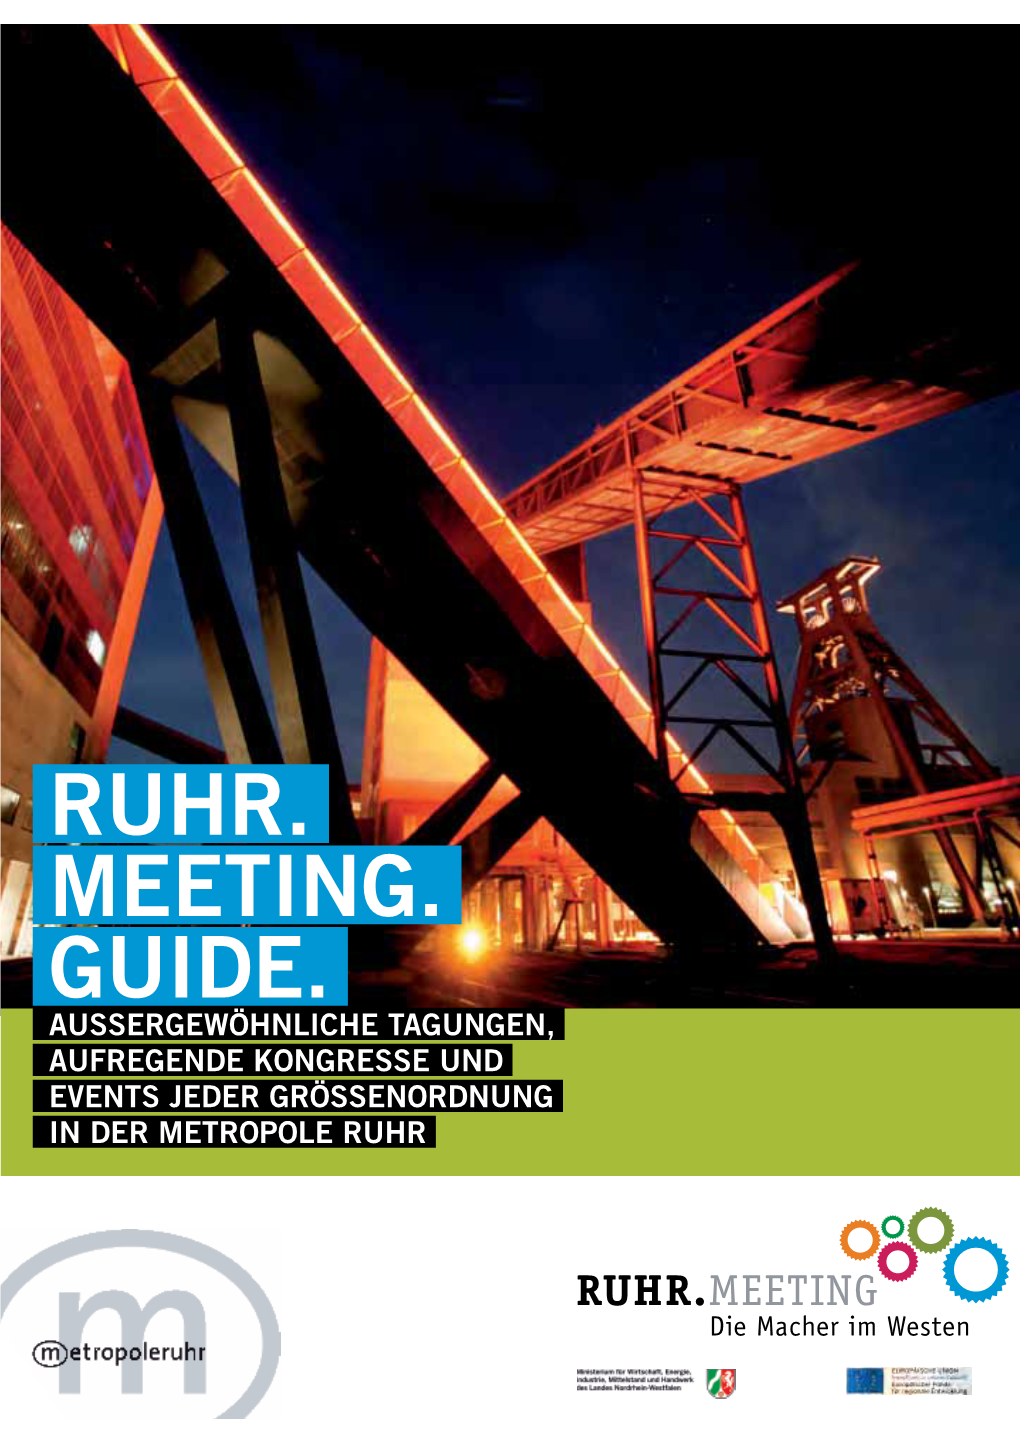 Ruhr. Meeting. Guide. Aussergewöhnliche Tagungen, Aufregende Kongresse Und Events Jeder Grössenordnung in Der Metropole Ruhr